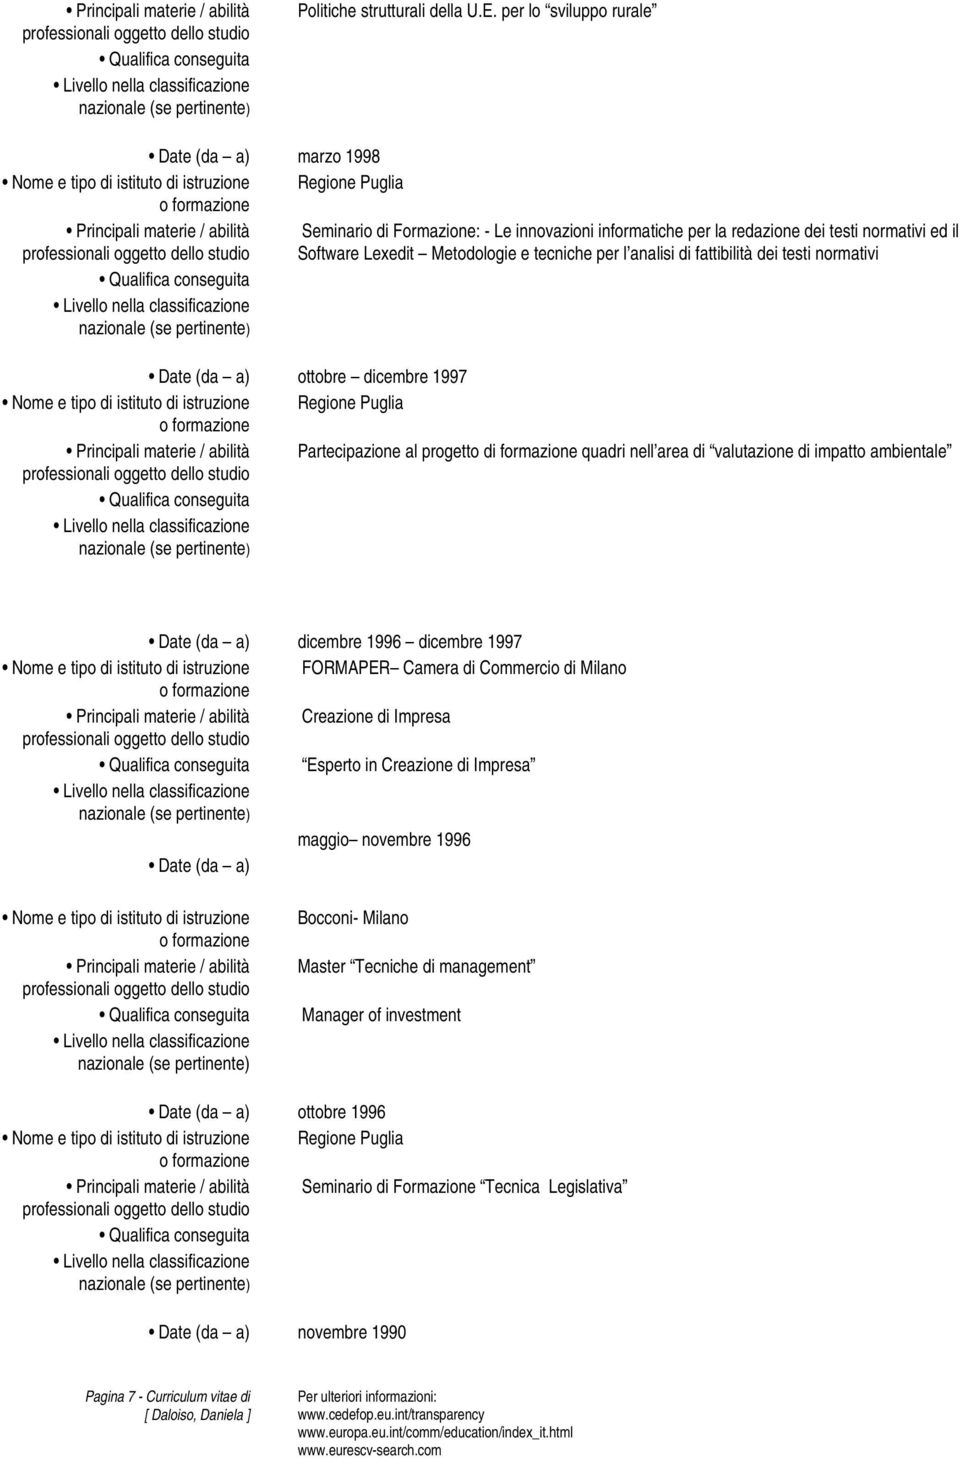 Software Lexedit Metodologie e tecniche per l analisi di fattibilità dei testi normativi Date (da a) ottobre dicembre 1997 Nome e tipo di istituto di istruzione Regione Puglia Partecipazione al